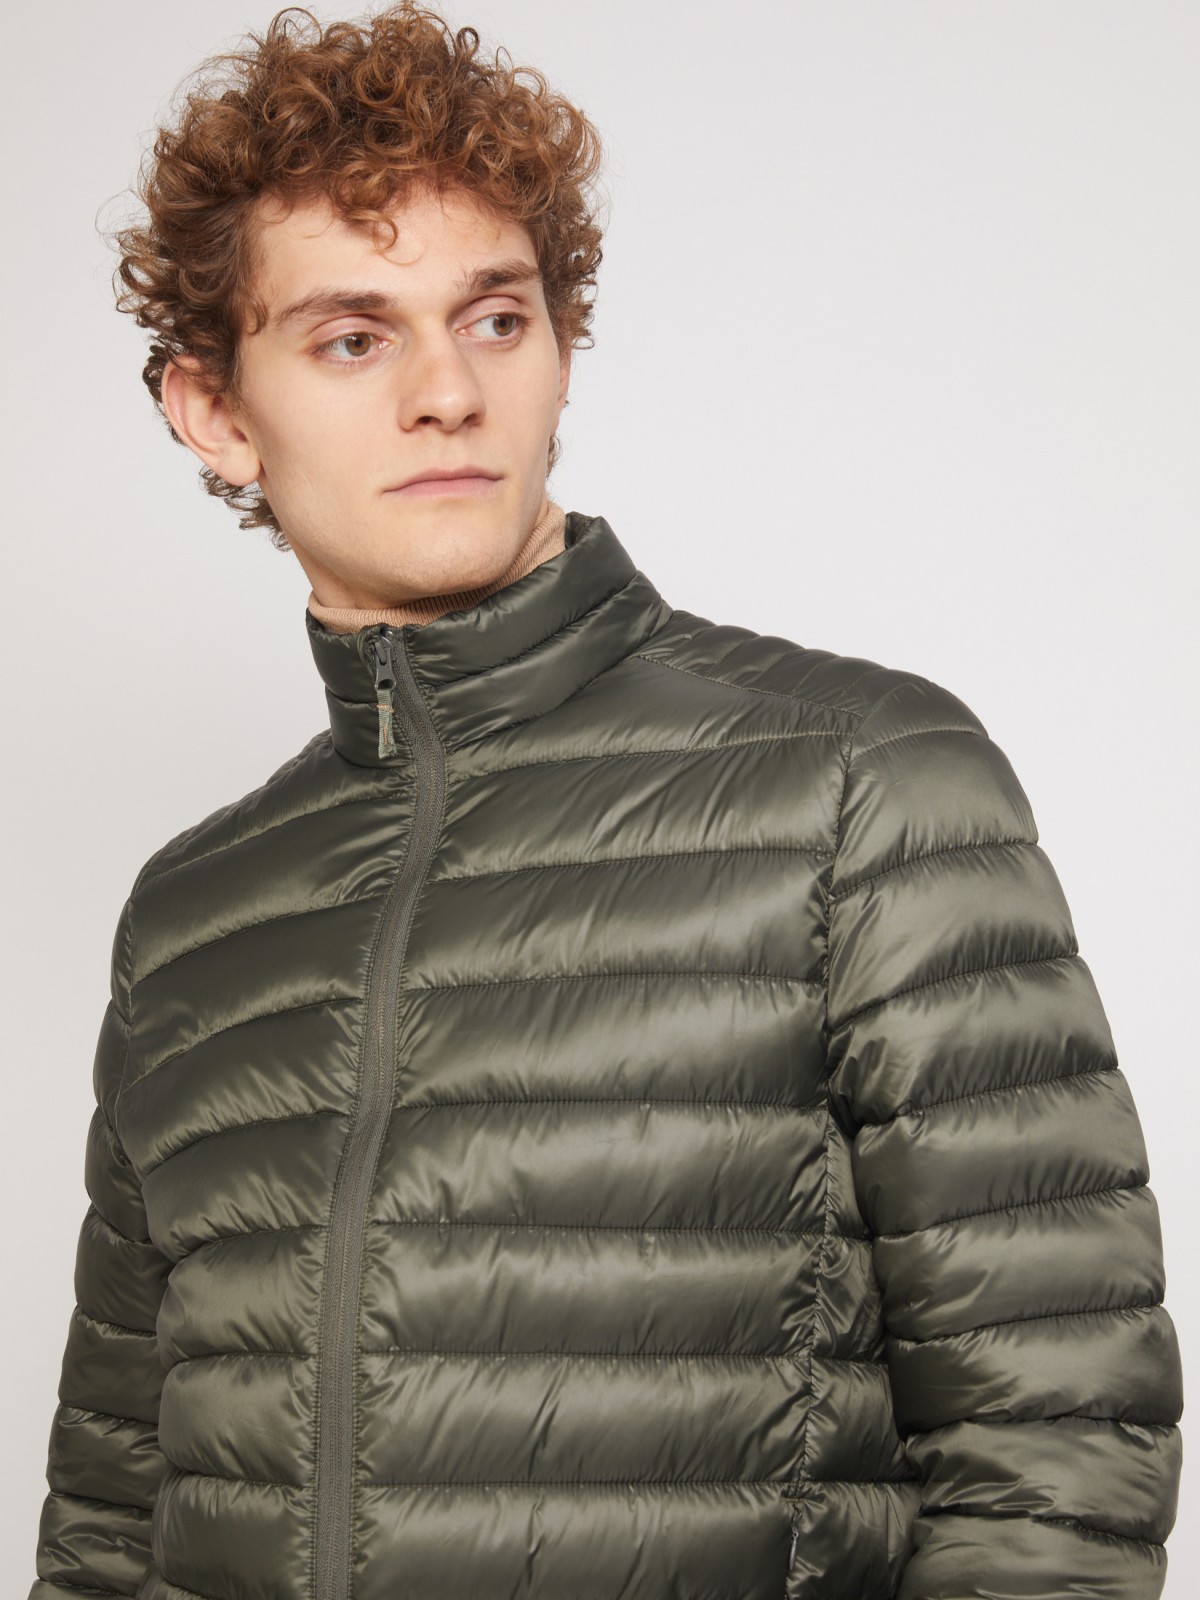 Ультралёгкая стёганая куртка с воротником-стойкой zolla 011335102214, цвет хаки, размер S - фото 3